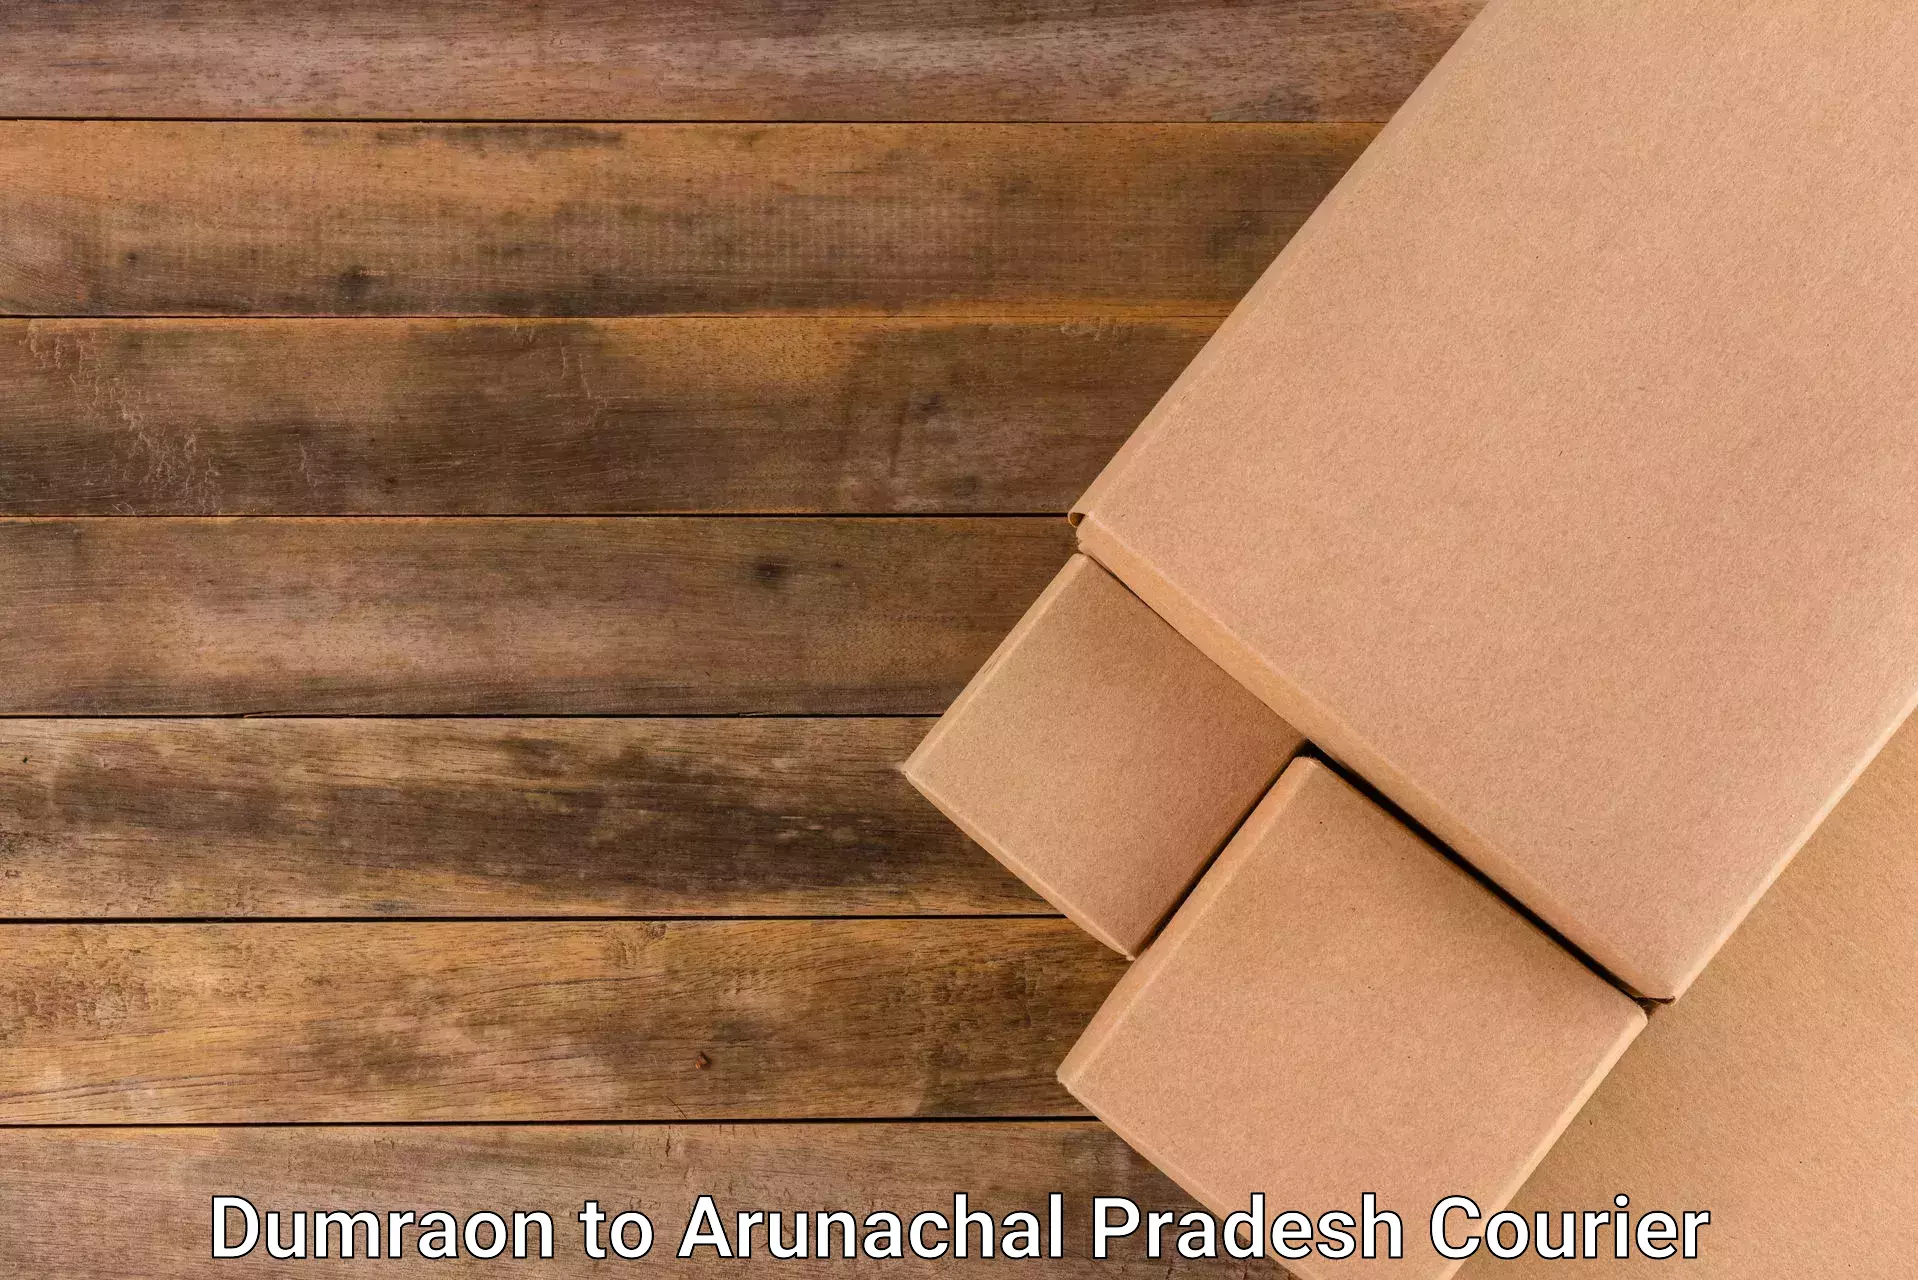 Express package handling Dumraon to Arunachal Pradesh